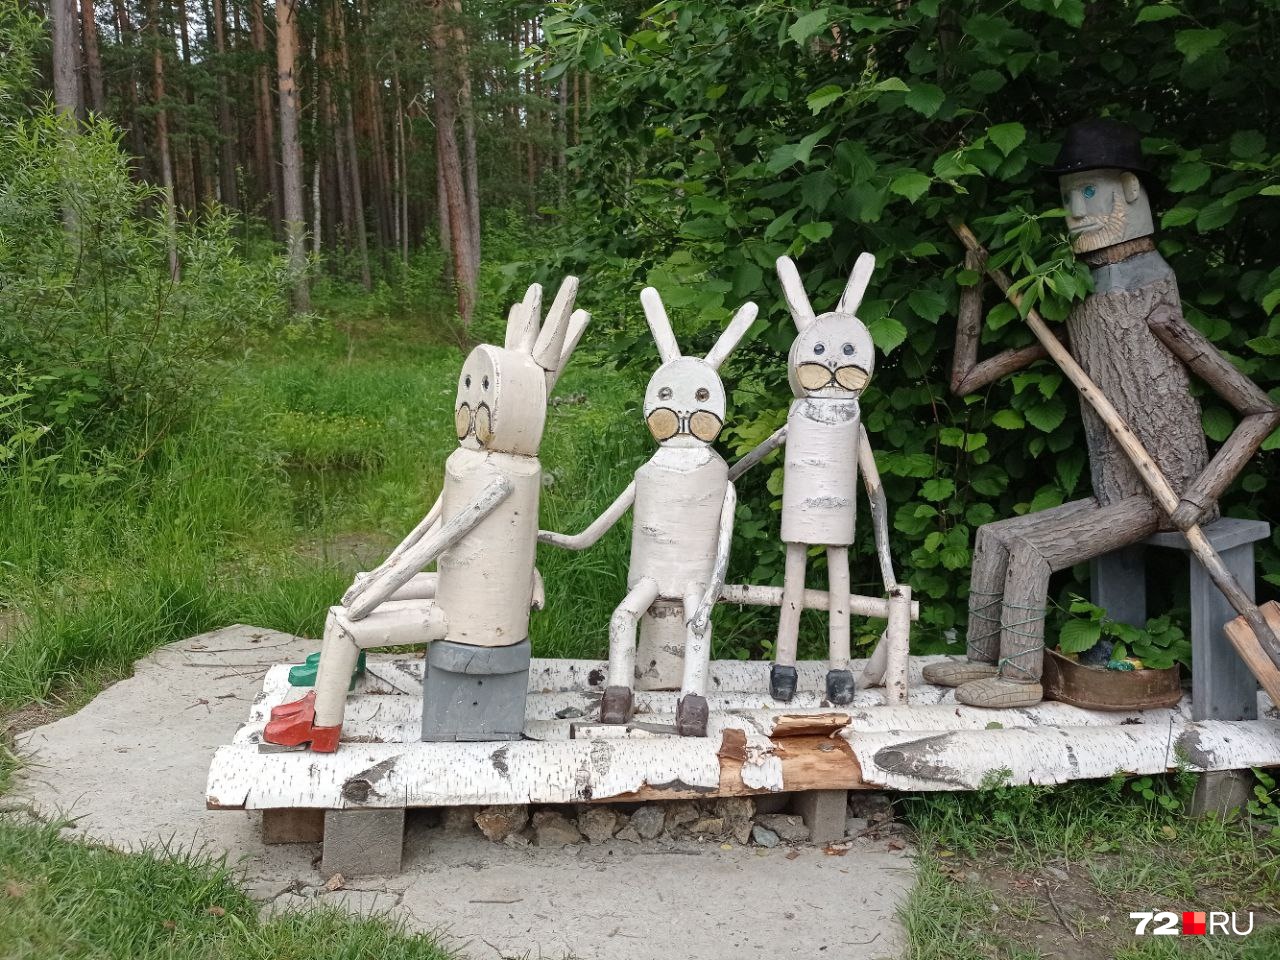 Инсталляция при входе в парк. Похоже на «Дед Мазай и зайцы». Какие у вас варианты?